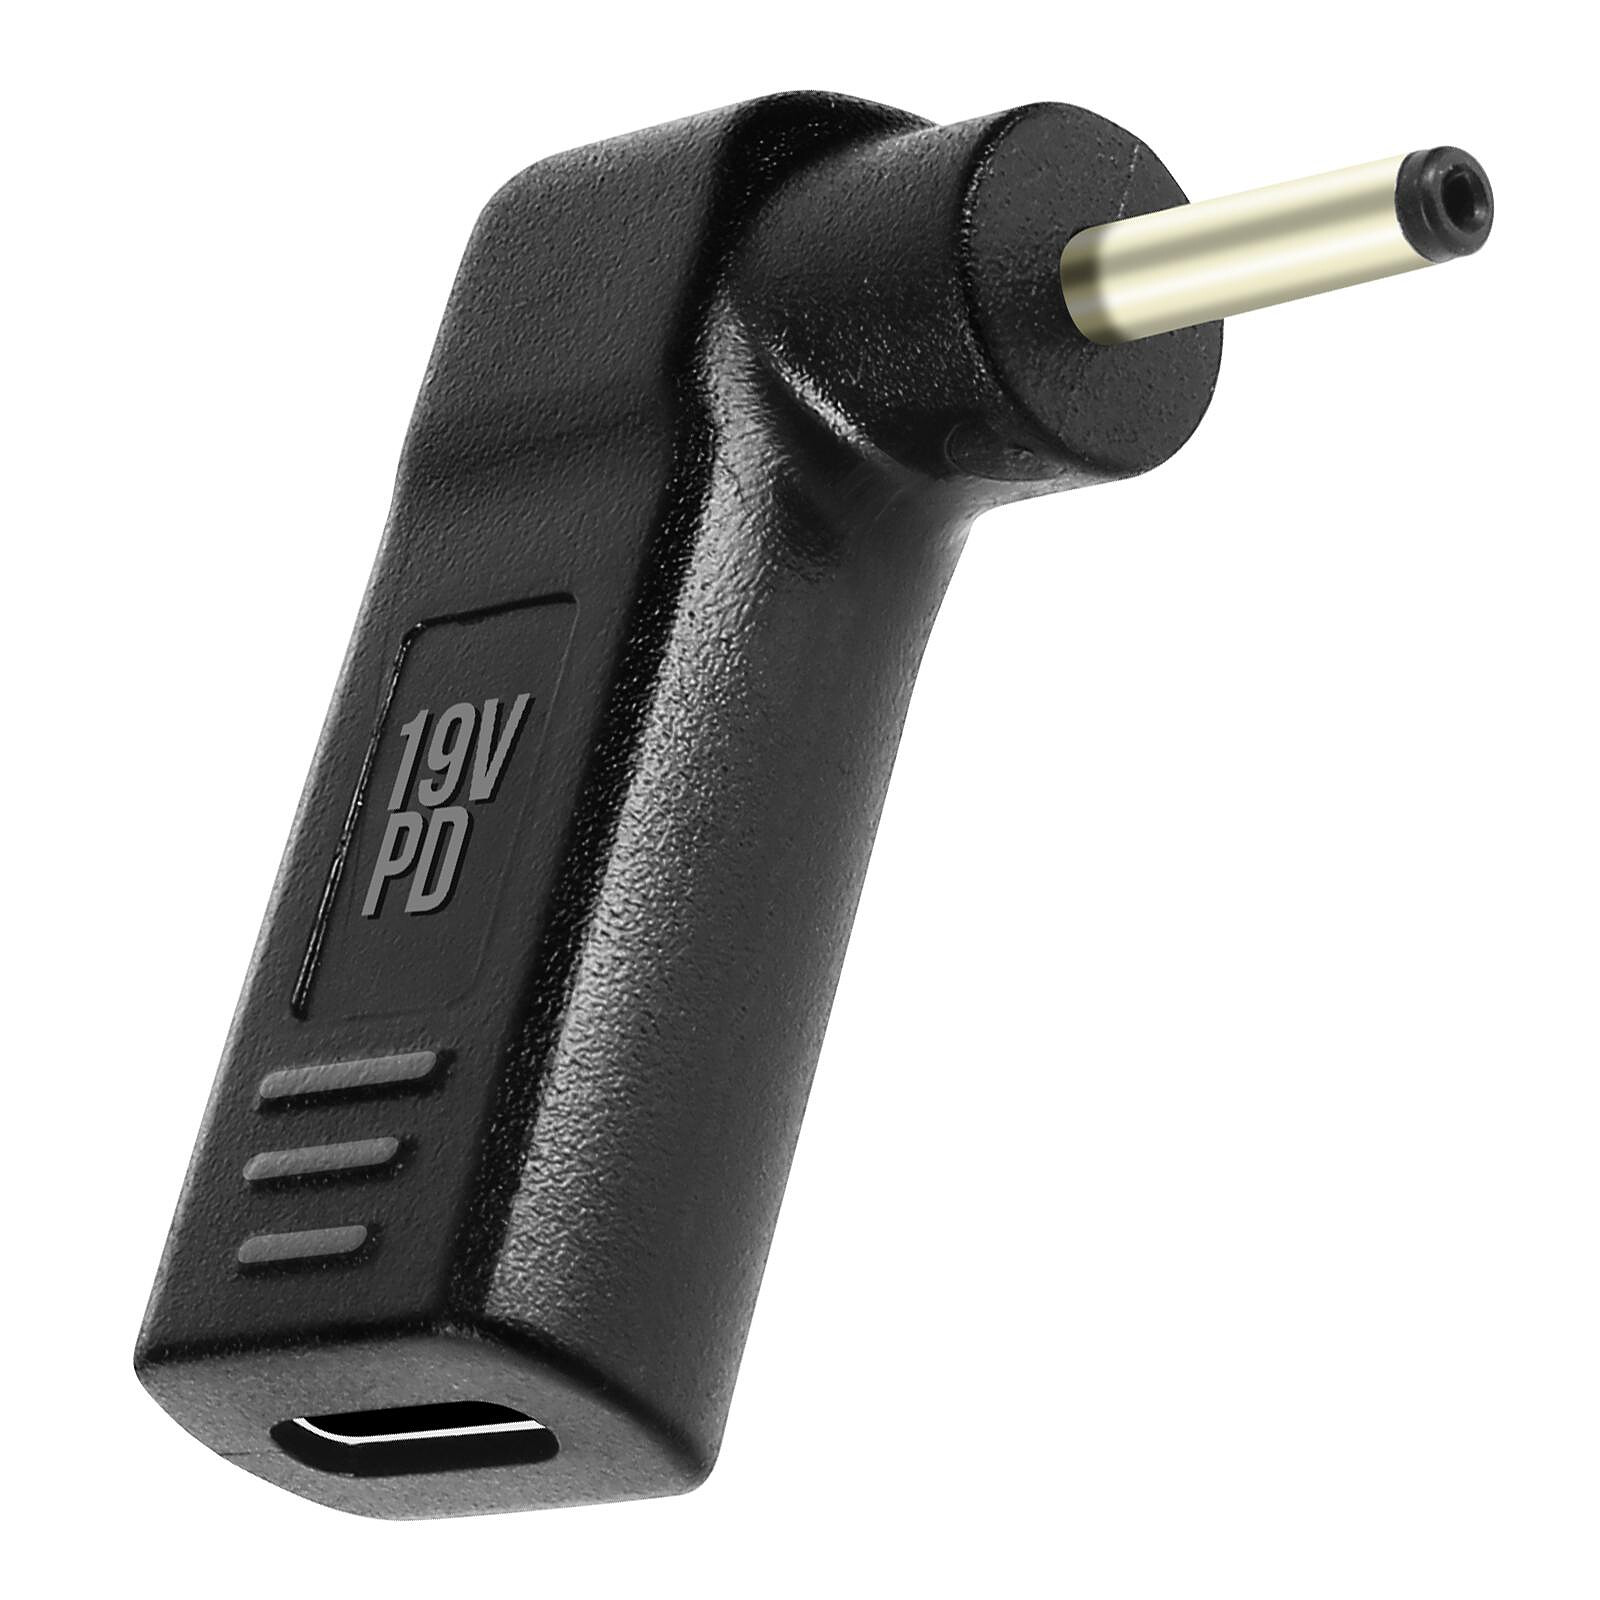 Avizar Adaptateur iPhone / iPad Lightning vers 2 USB et Lightning Charge  Compact Blanc - Câble & Adaptateur - LDLC